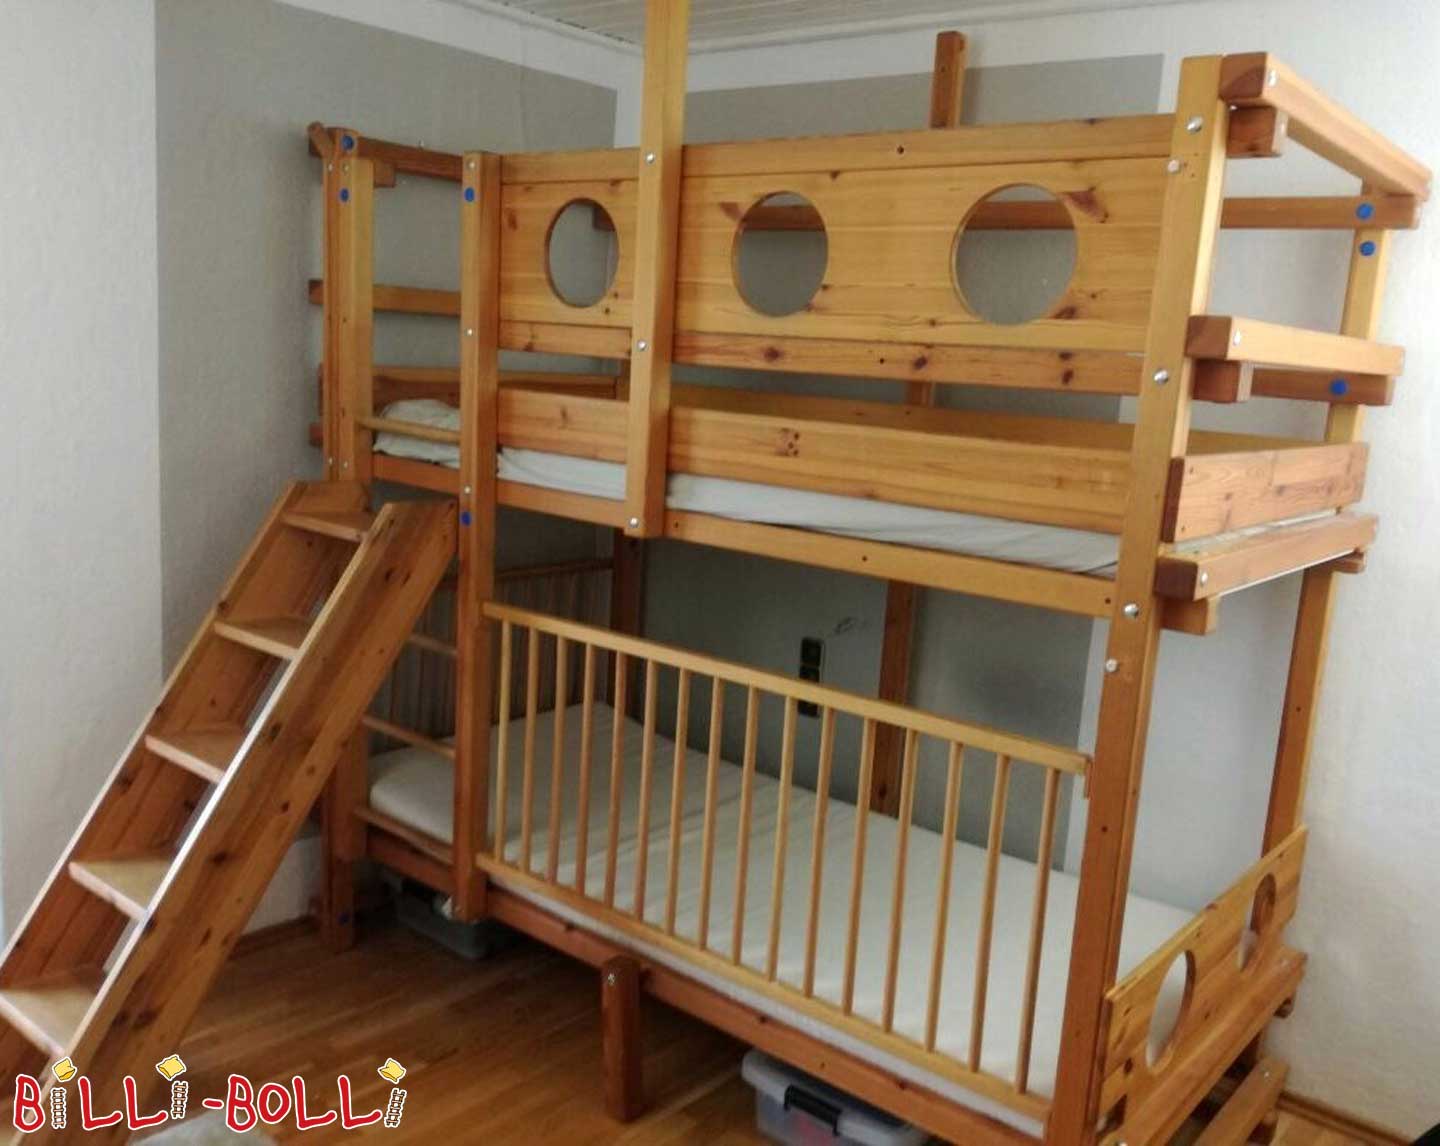 बंक बेड, 90 x 200 सेमी, तेल से सना हुआ लच्छेदार पाइन (कोटि: चारपाई बिस्तर का इस्तेमाल किया)